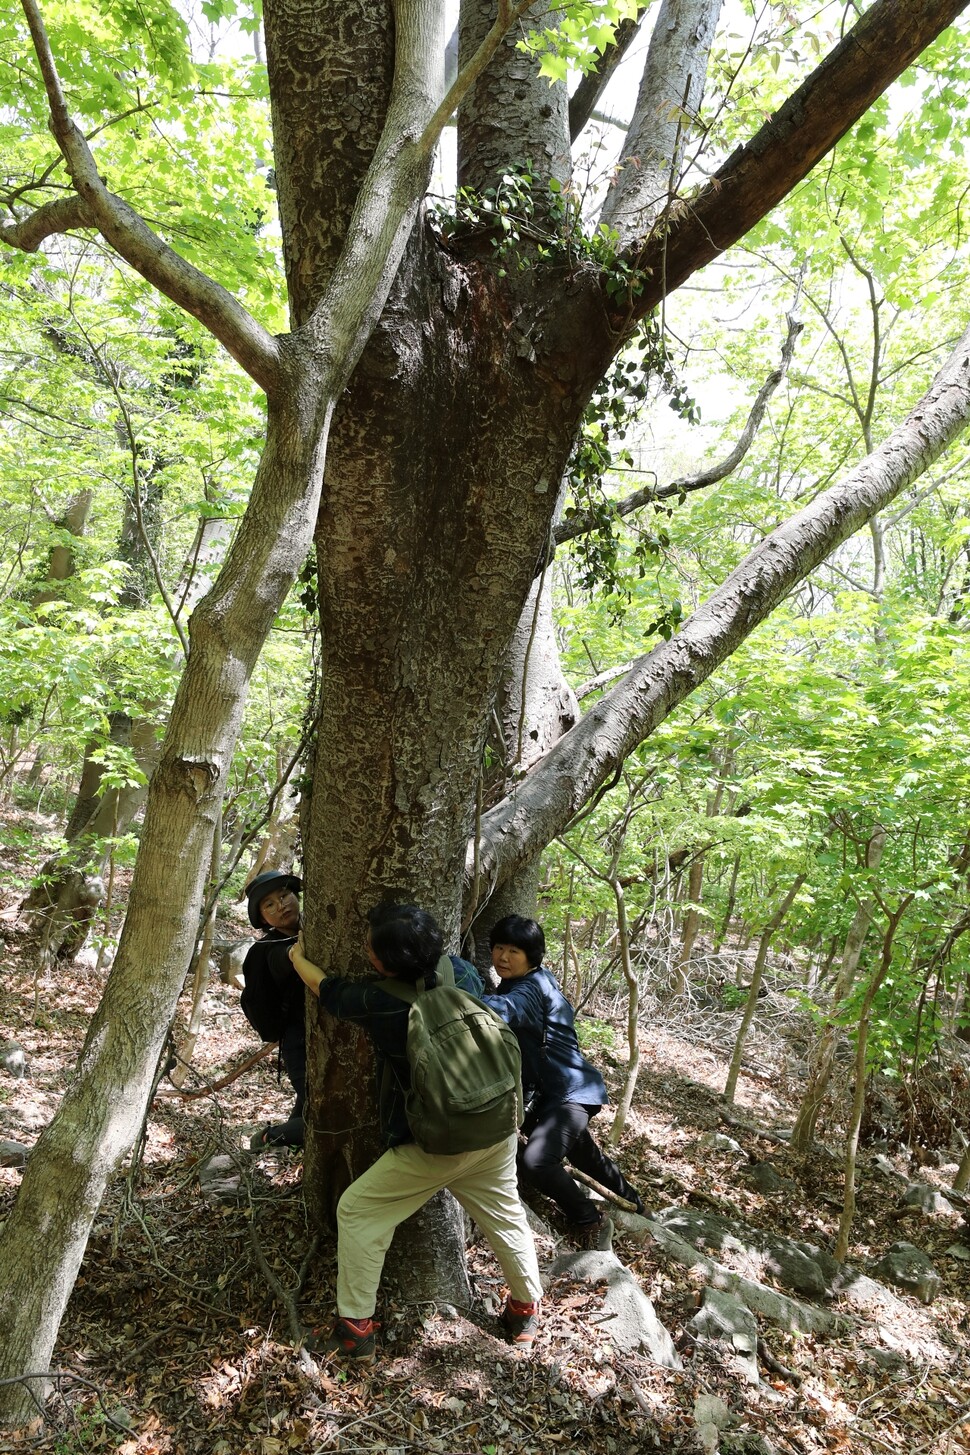 국수봉 남동쪽에 있는 느티나무. 성인 여성 3명이 안을 수 없을 만큼 굵다.